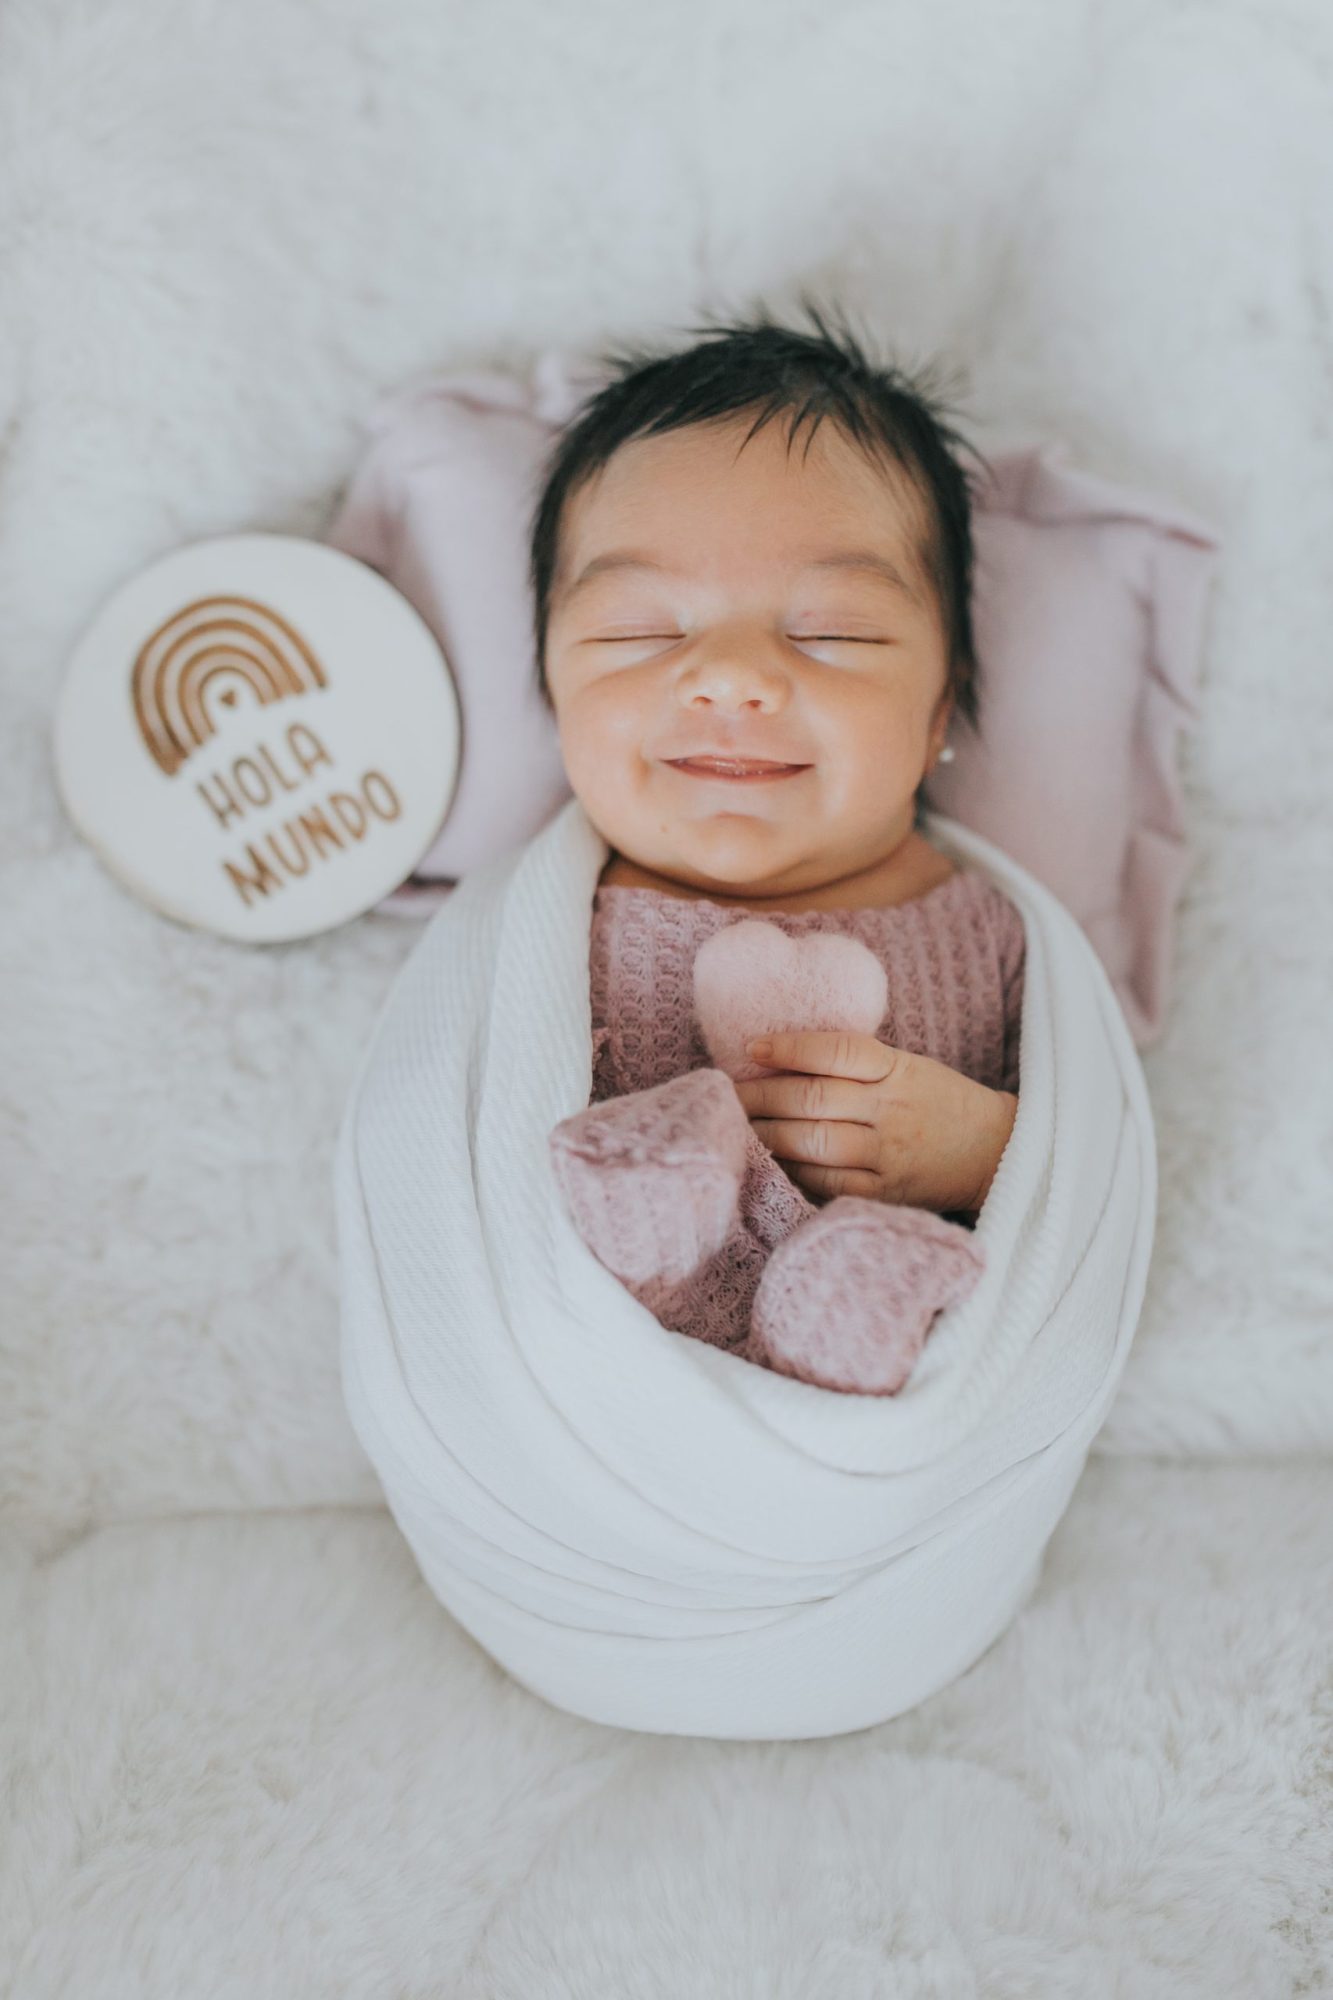 Bebé sonriente con los ojos cerrados y envuelta en mantas